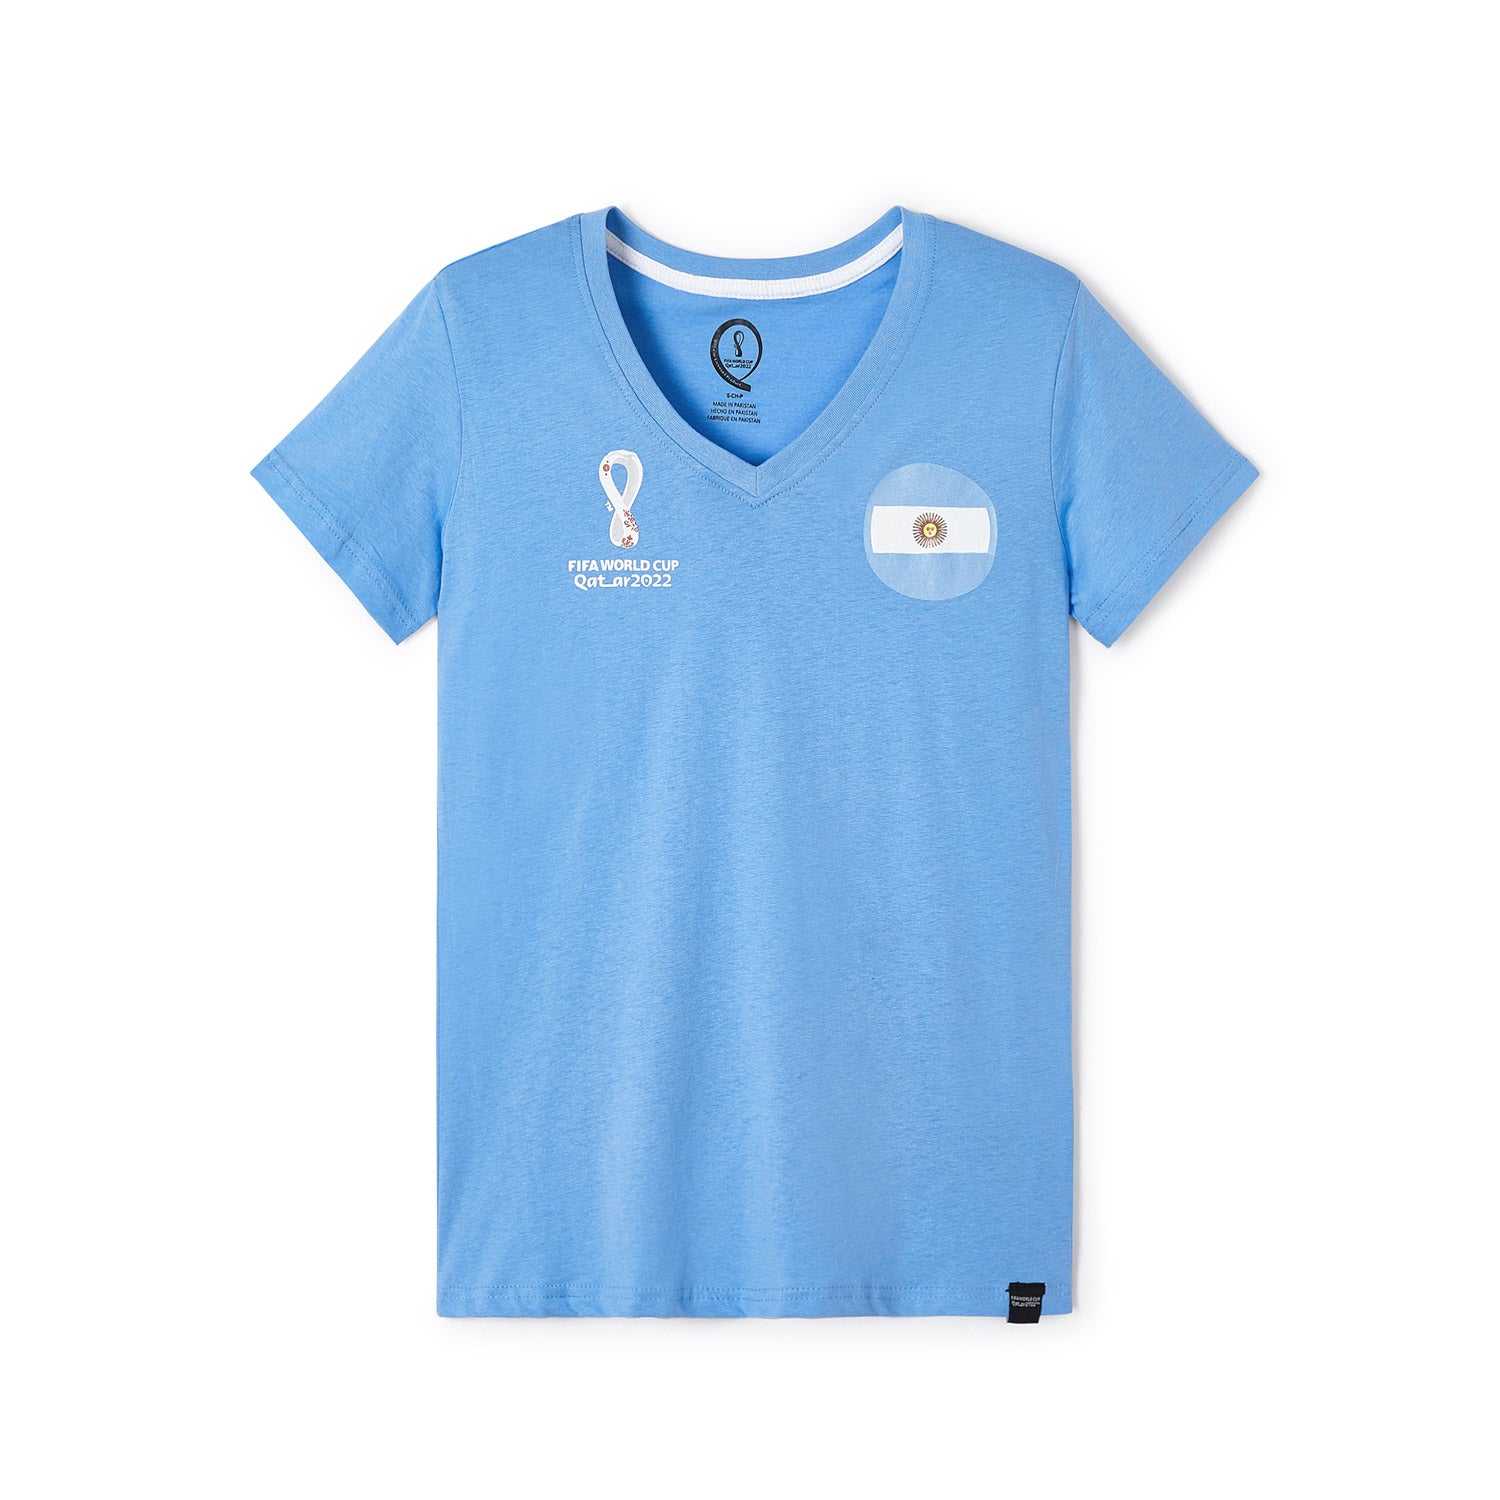 2022 World Cup Argentina Blue T-Shirt - Women's